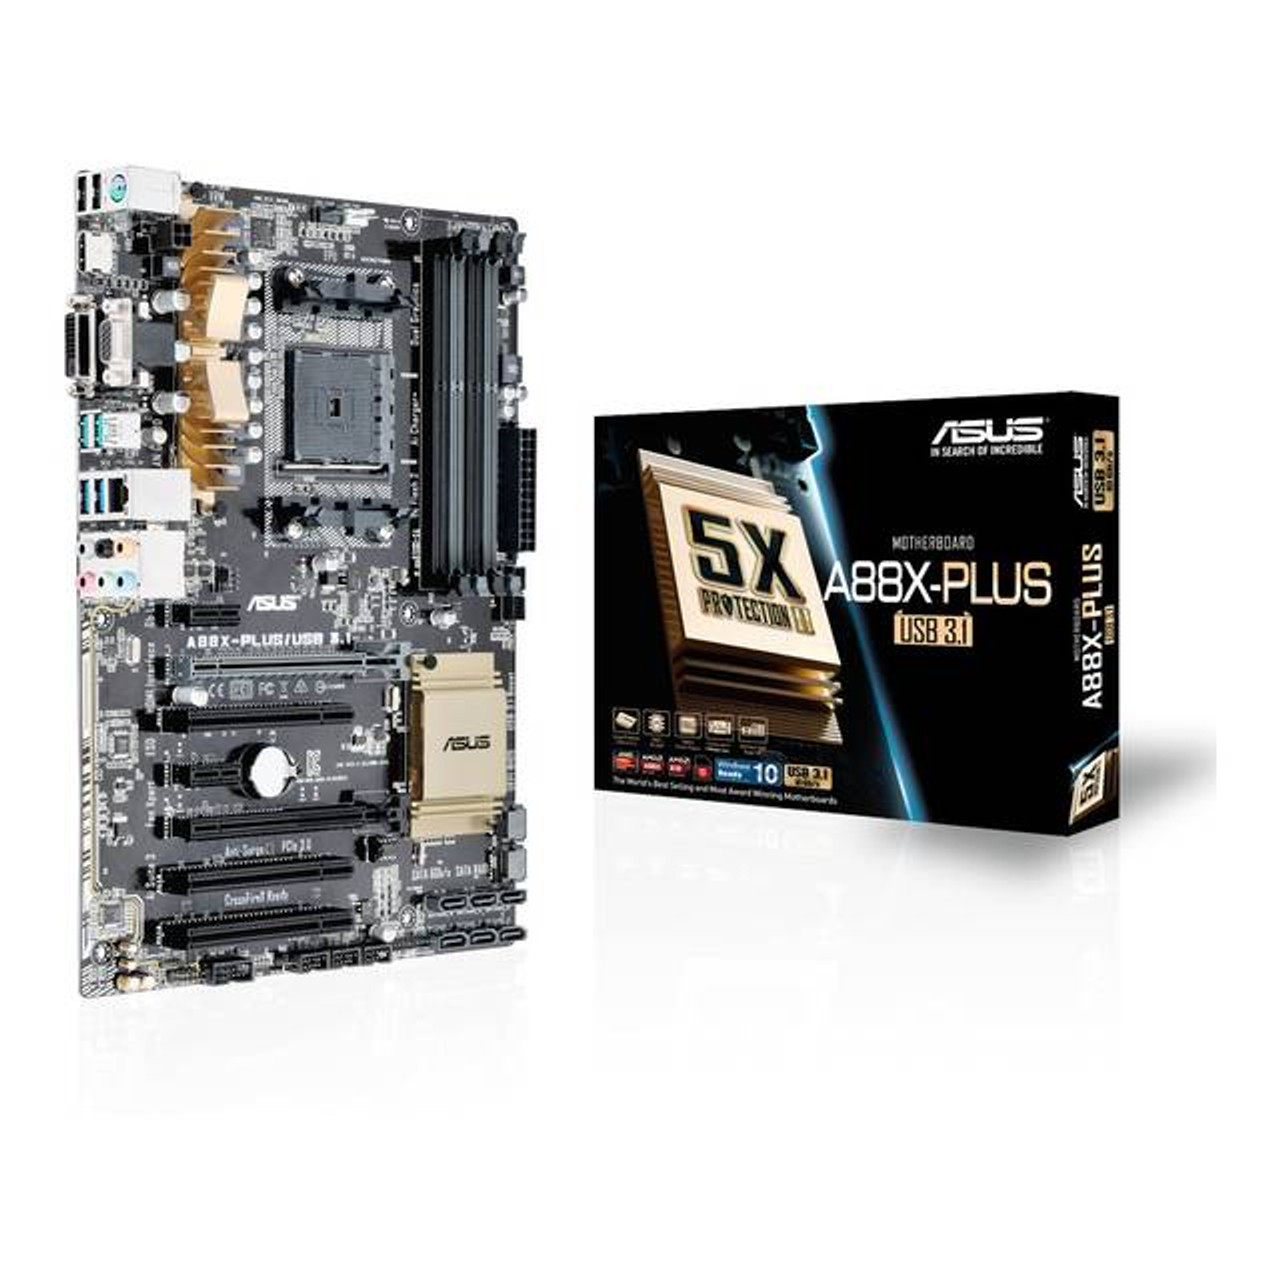 Asus A88X-PLUS/USB 3.1 Socket FM2+/ AMD A88X/ DDR3/ CrossFireX/ SATA3&USB3.1/ A&GbE/ ATX Motherboard